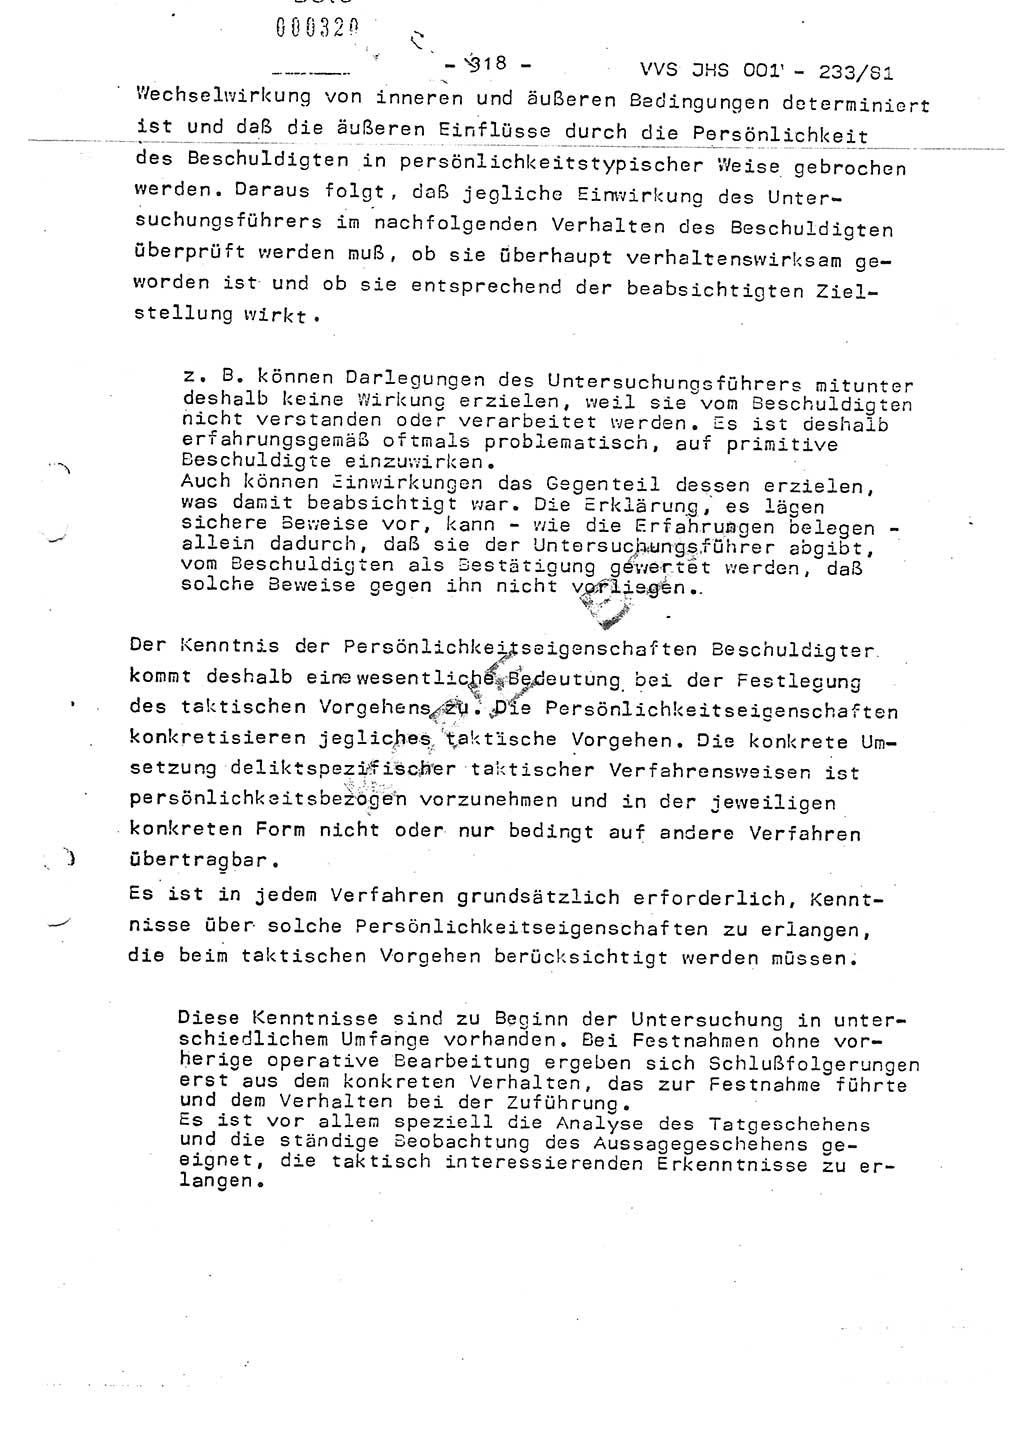 Dissertation Oberstleutnant Horst Zank (JHS), Oberstleutnant Dr. Karl-Heinz Knoblauch (JHS), Oberstleutnant Gustav-Adolf Kowalewski (HA Ⅸ), Oberstleutnant Wolfgang Plötner (HA Ⅸ), Ministerium für Staatssicherheit (MfS) [Deutsche Demokratische Republik (DDR)], Juristische Hochschule (JHS), Vertrauliche Verschlußsache (VVS) o001-233/81, Potsdam 1981, Blatt 318 (Diss. MfS DDR JHS VVS o001-233/81 1981, Bl. 318)